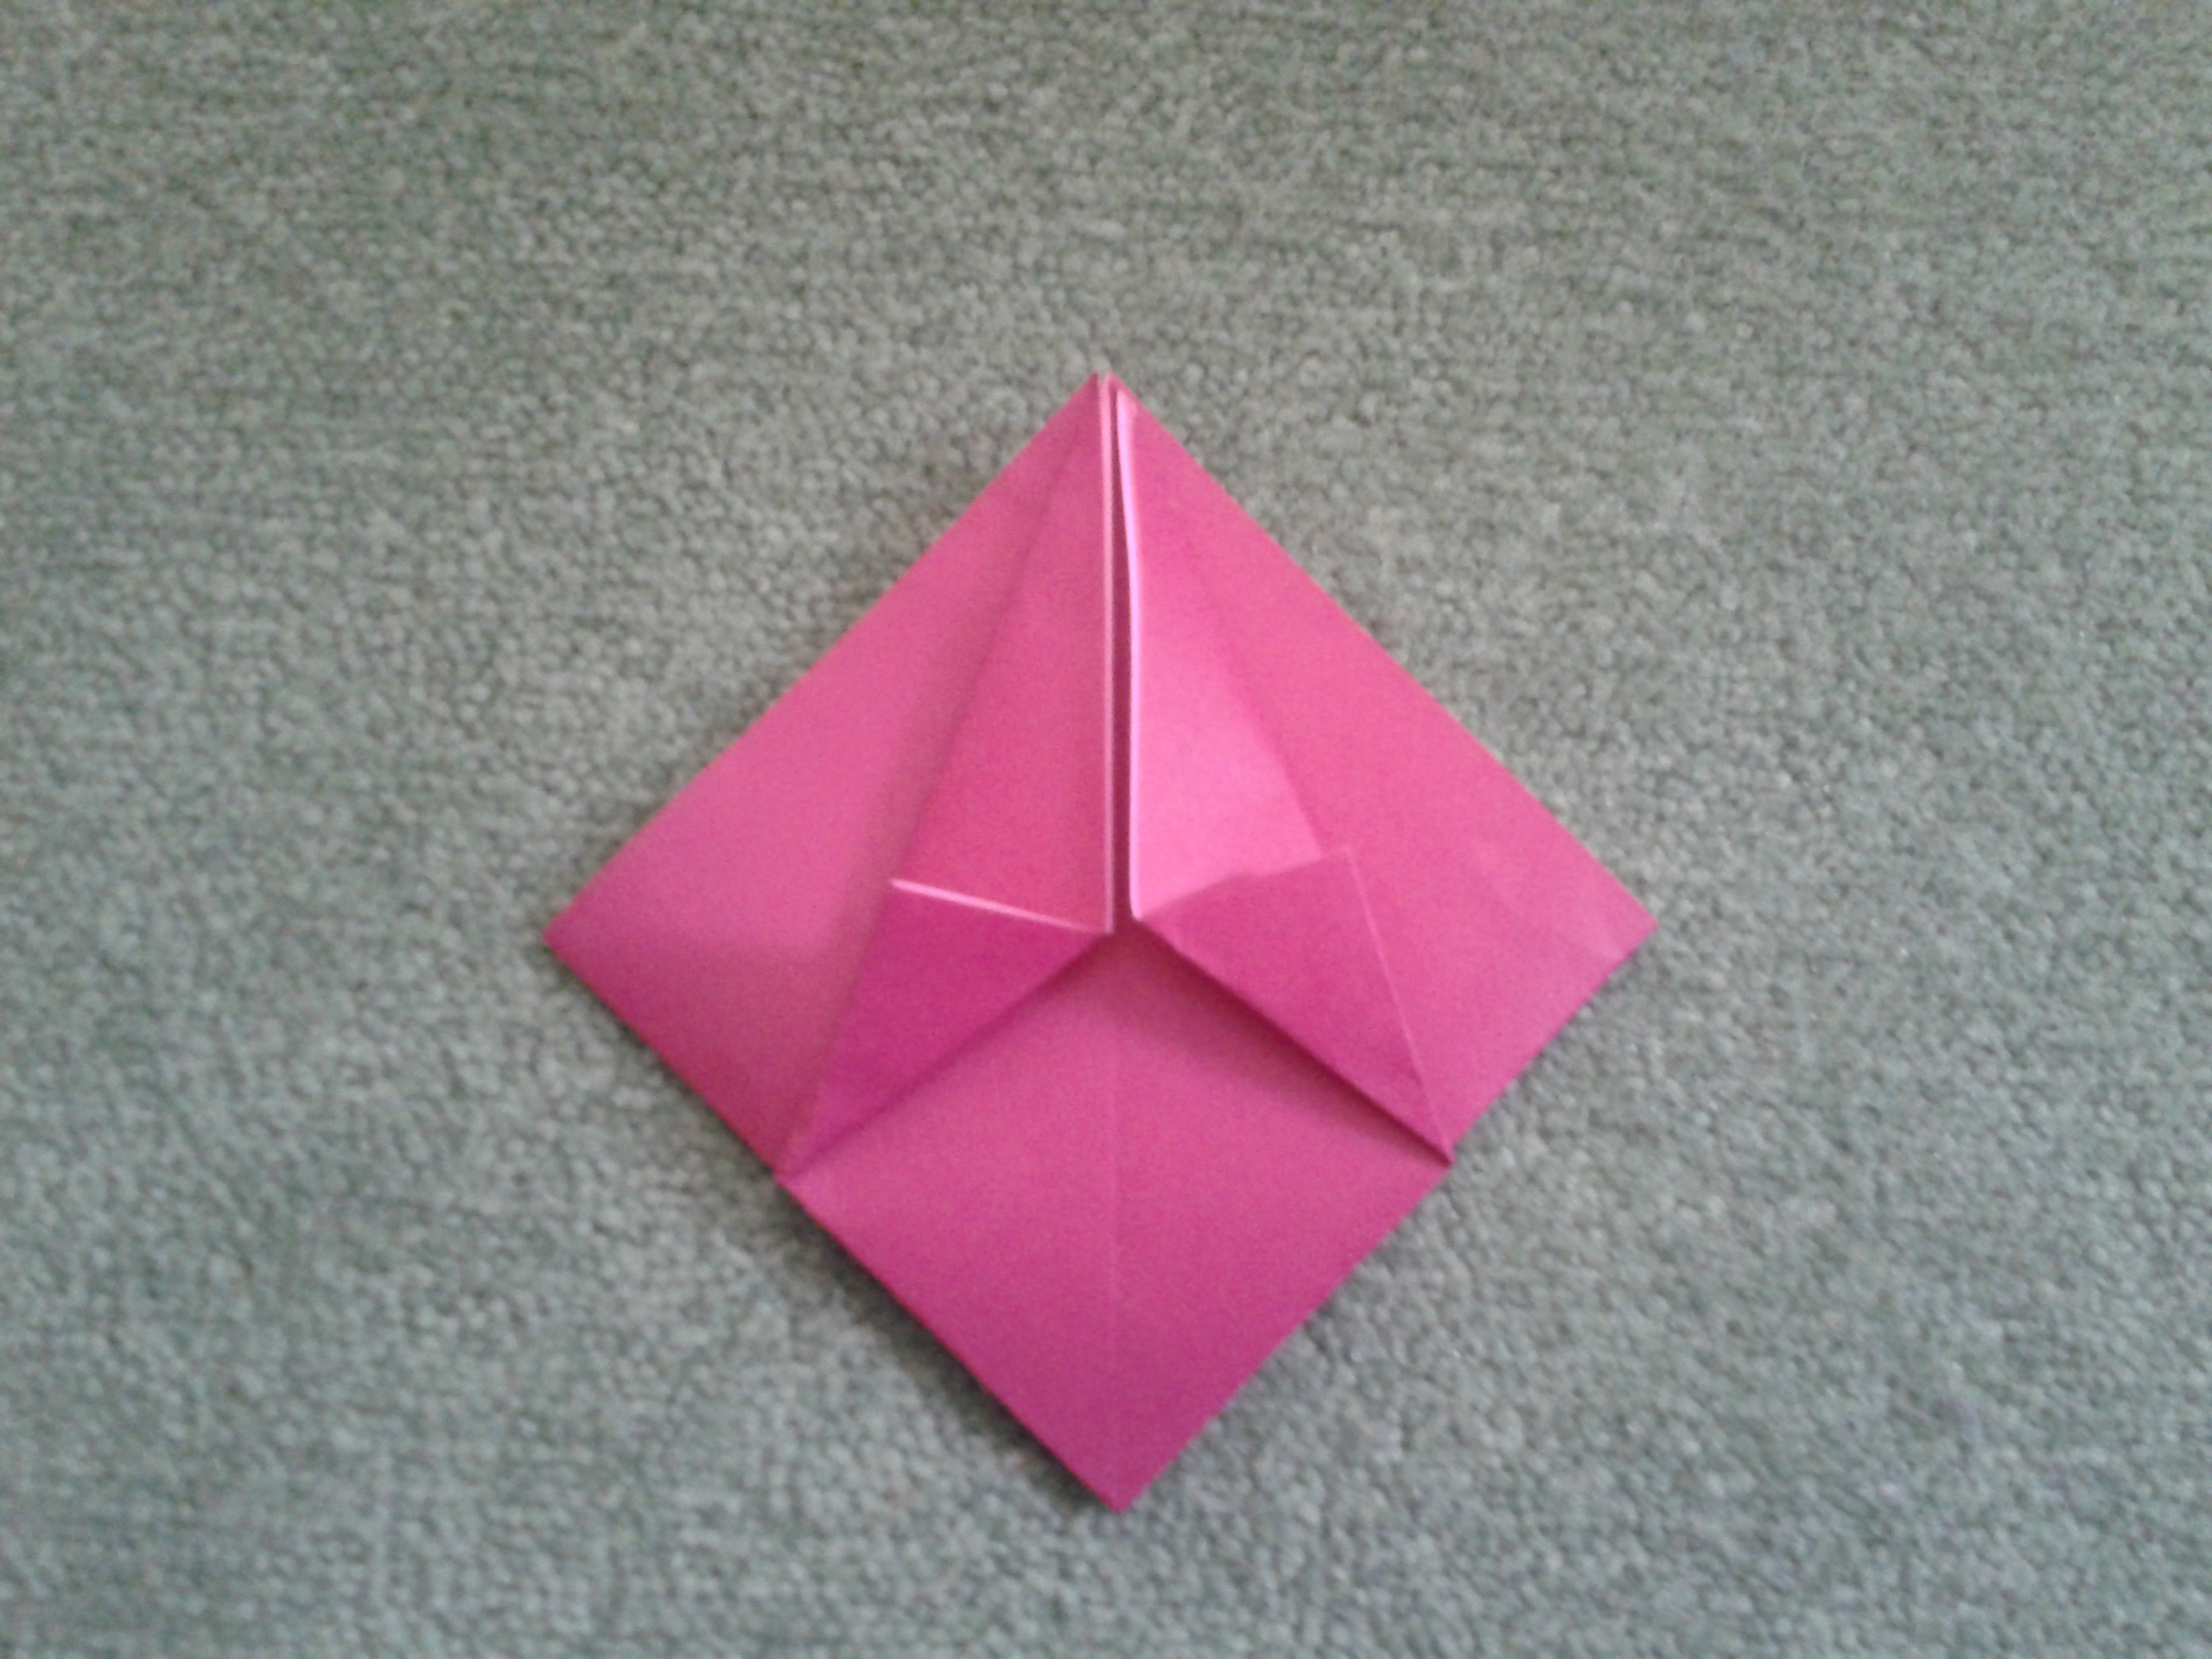 Index Card Origami Index Card Origami Box